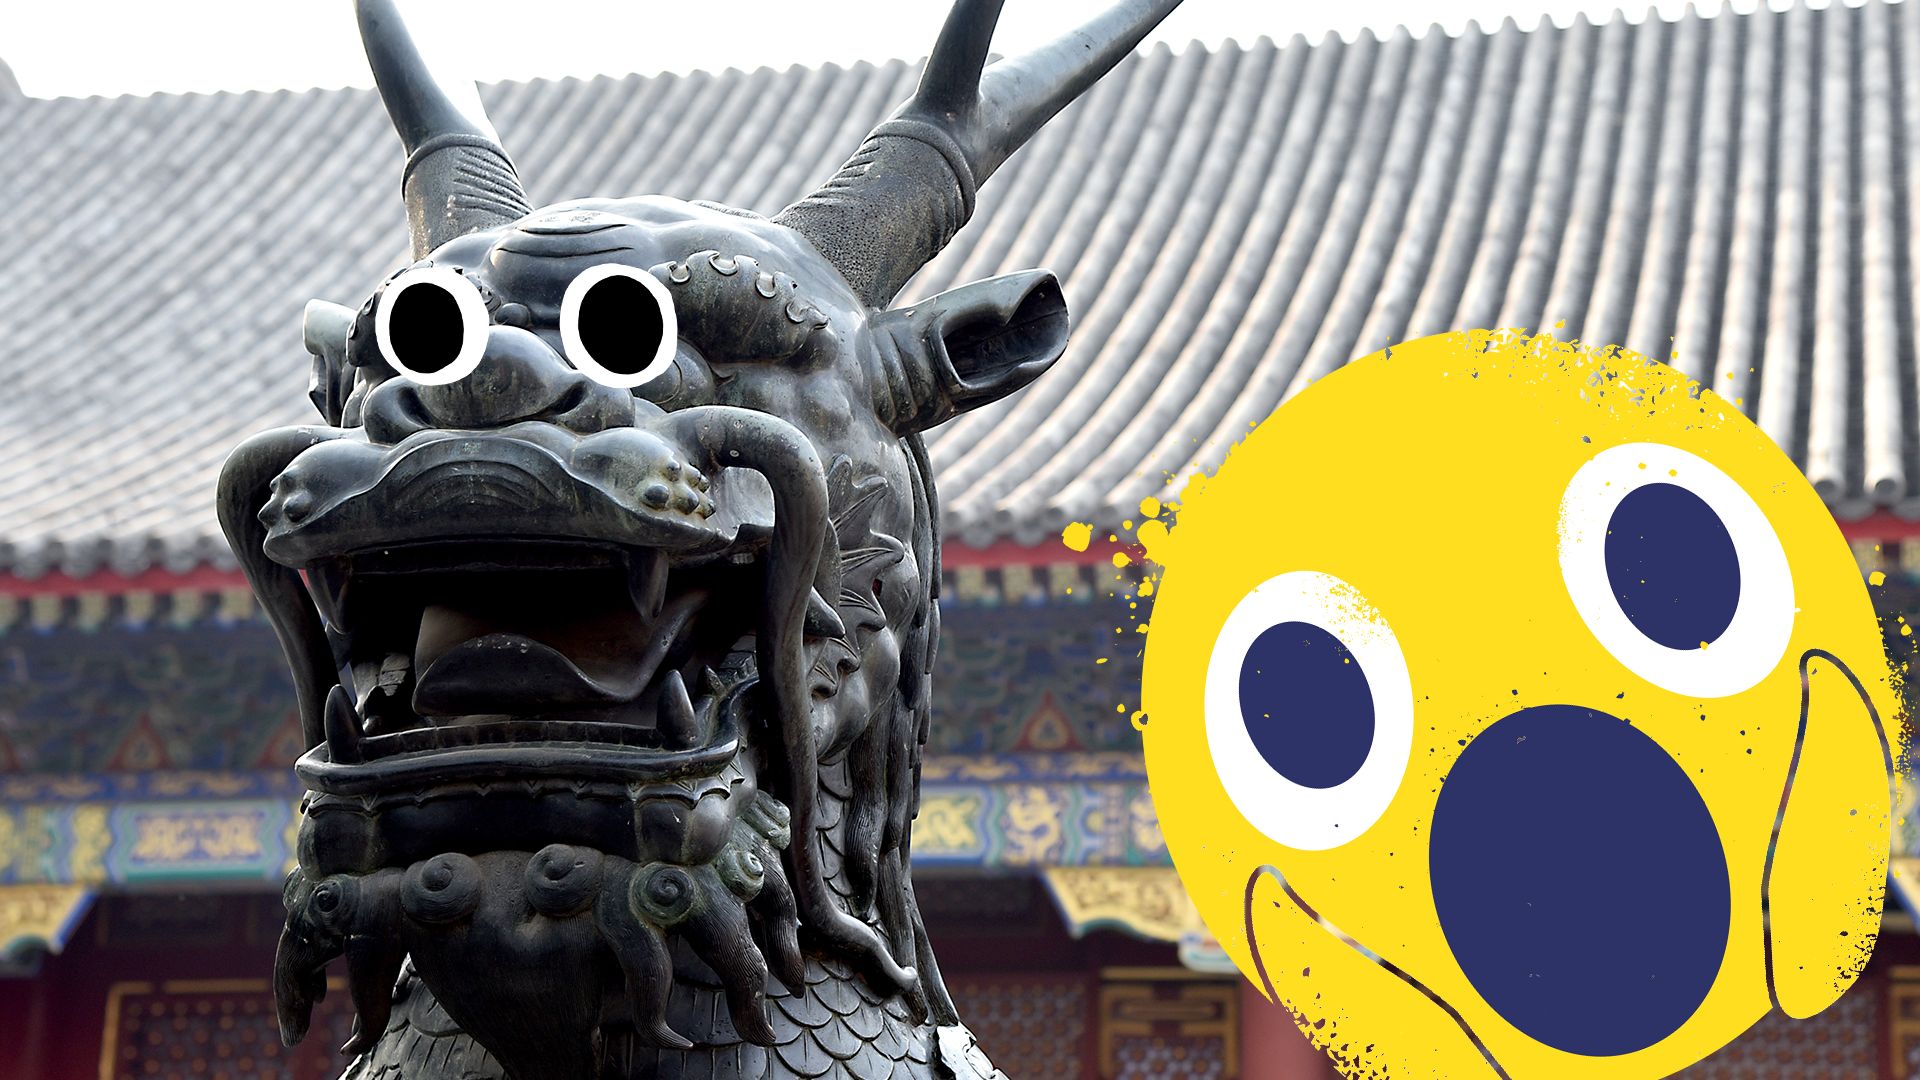 Chinese statue with shocked Beano emoji